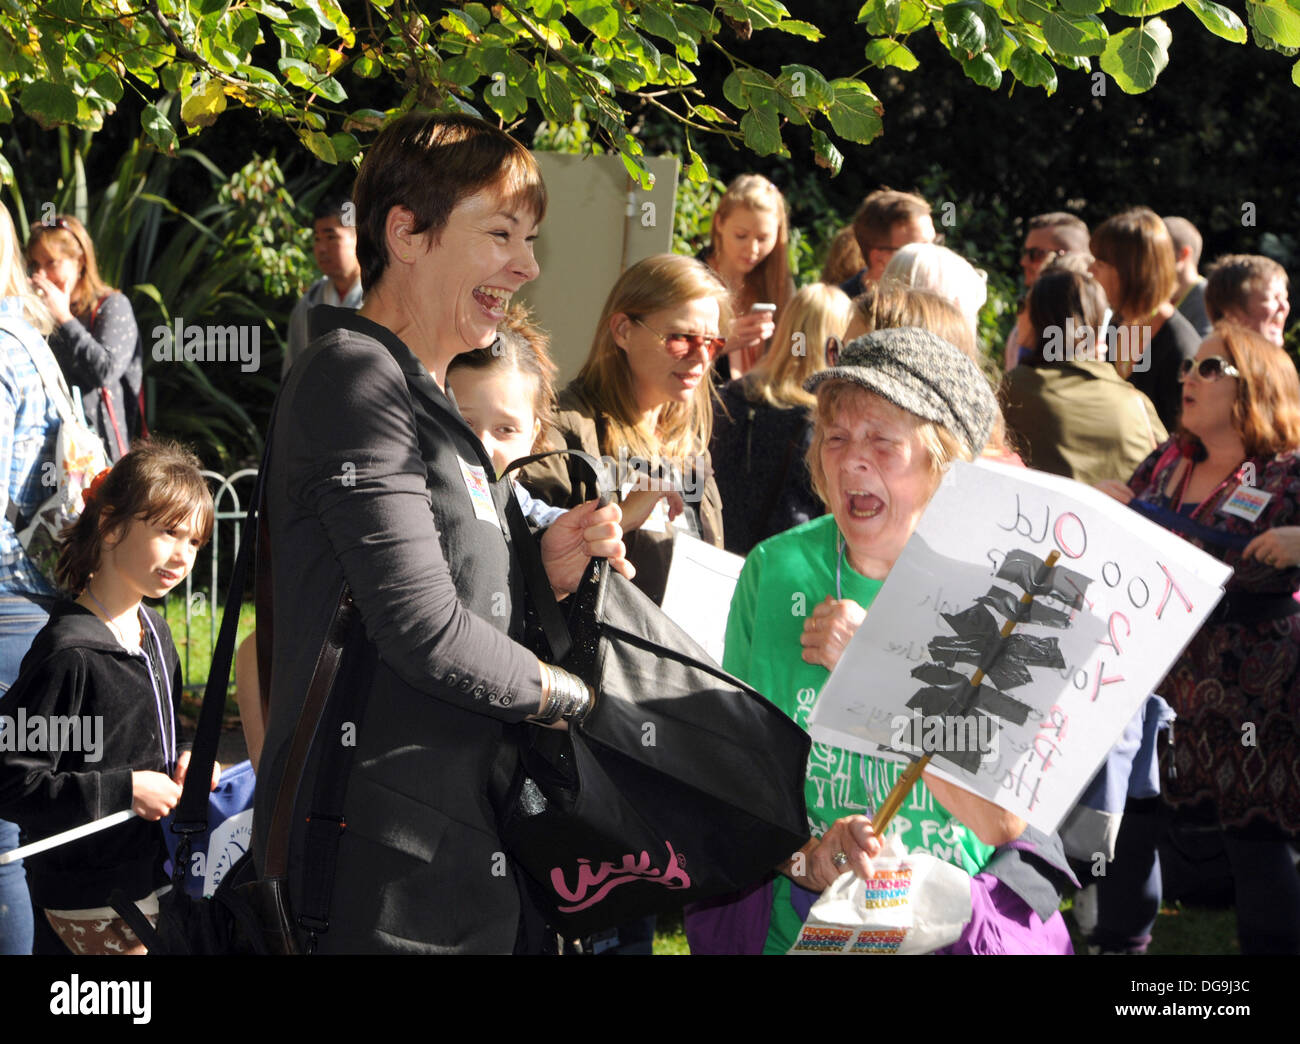 Brighton Regno Unito 17 ottobre 2013 - Caroline Lucas (ridendo) verde MP unisce migliaia di colpire gli insegnanti marciando attraverso la Brighton oggi come parte del loro piano nazionale di una giornata di azione contro i tagli alle loro retribuzioni e pensioni Foto Stock